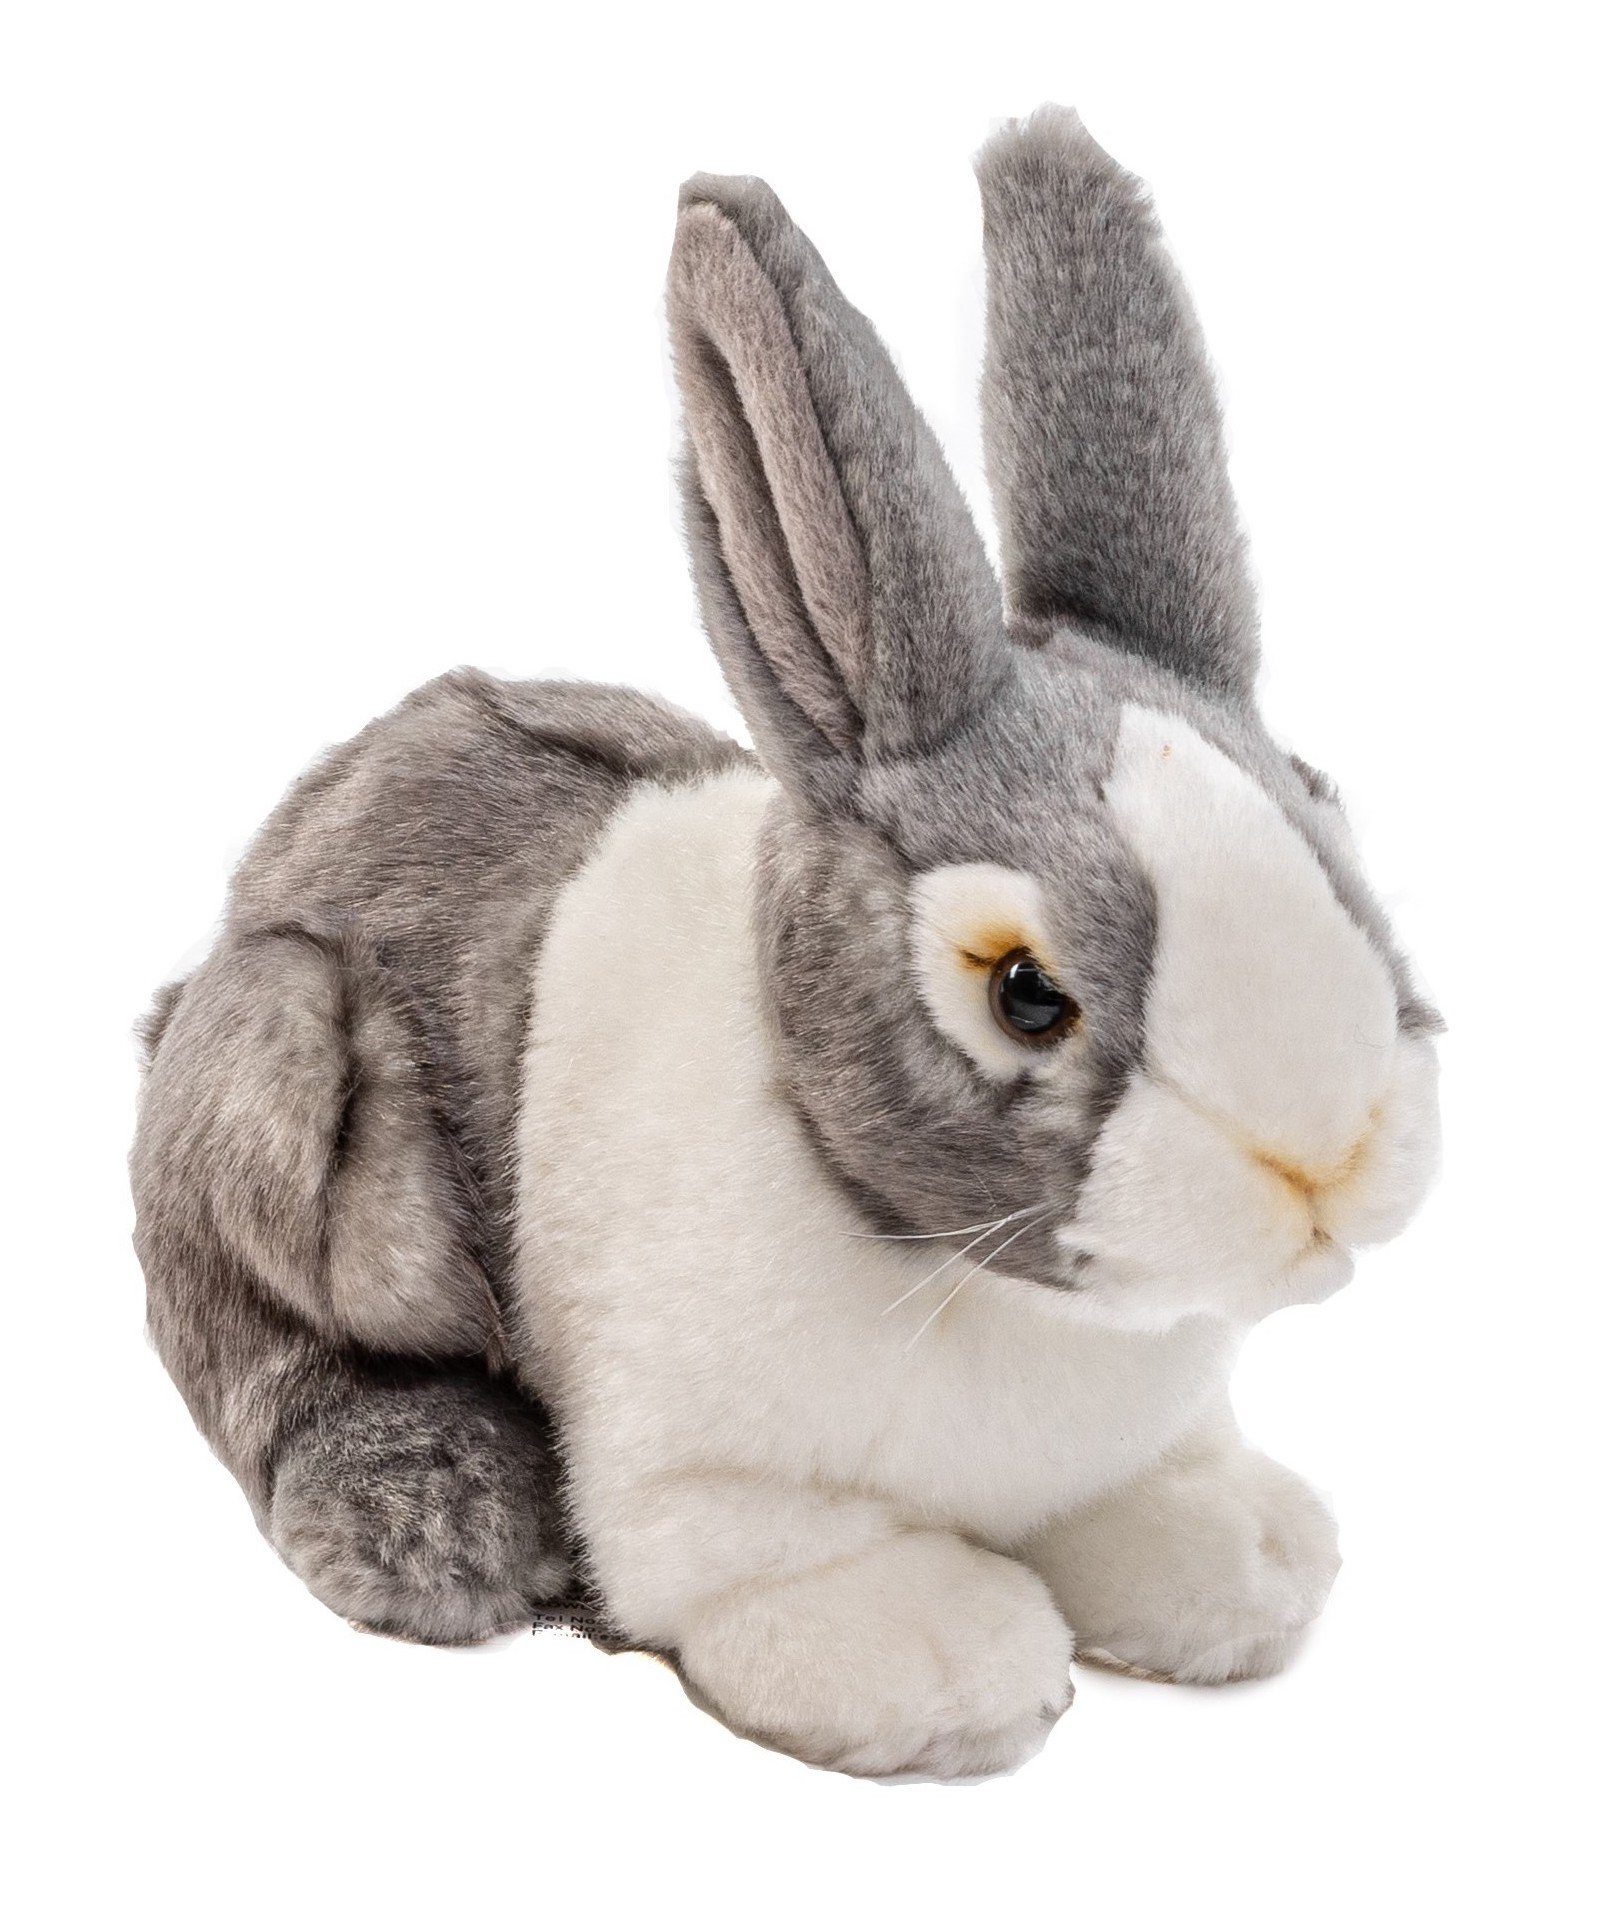 Uni-Toys Neuware Hase grau-weiß mit Täschchen ca 20cm groß 